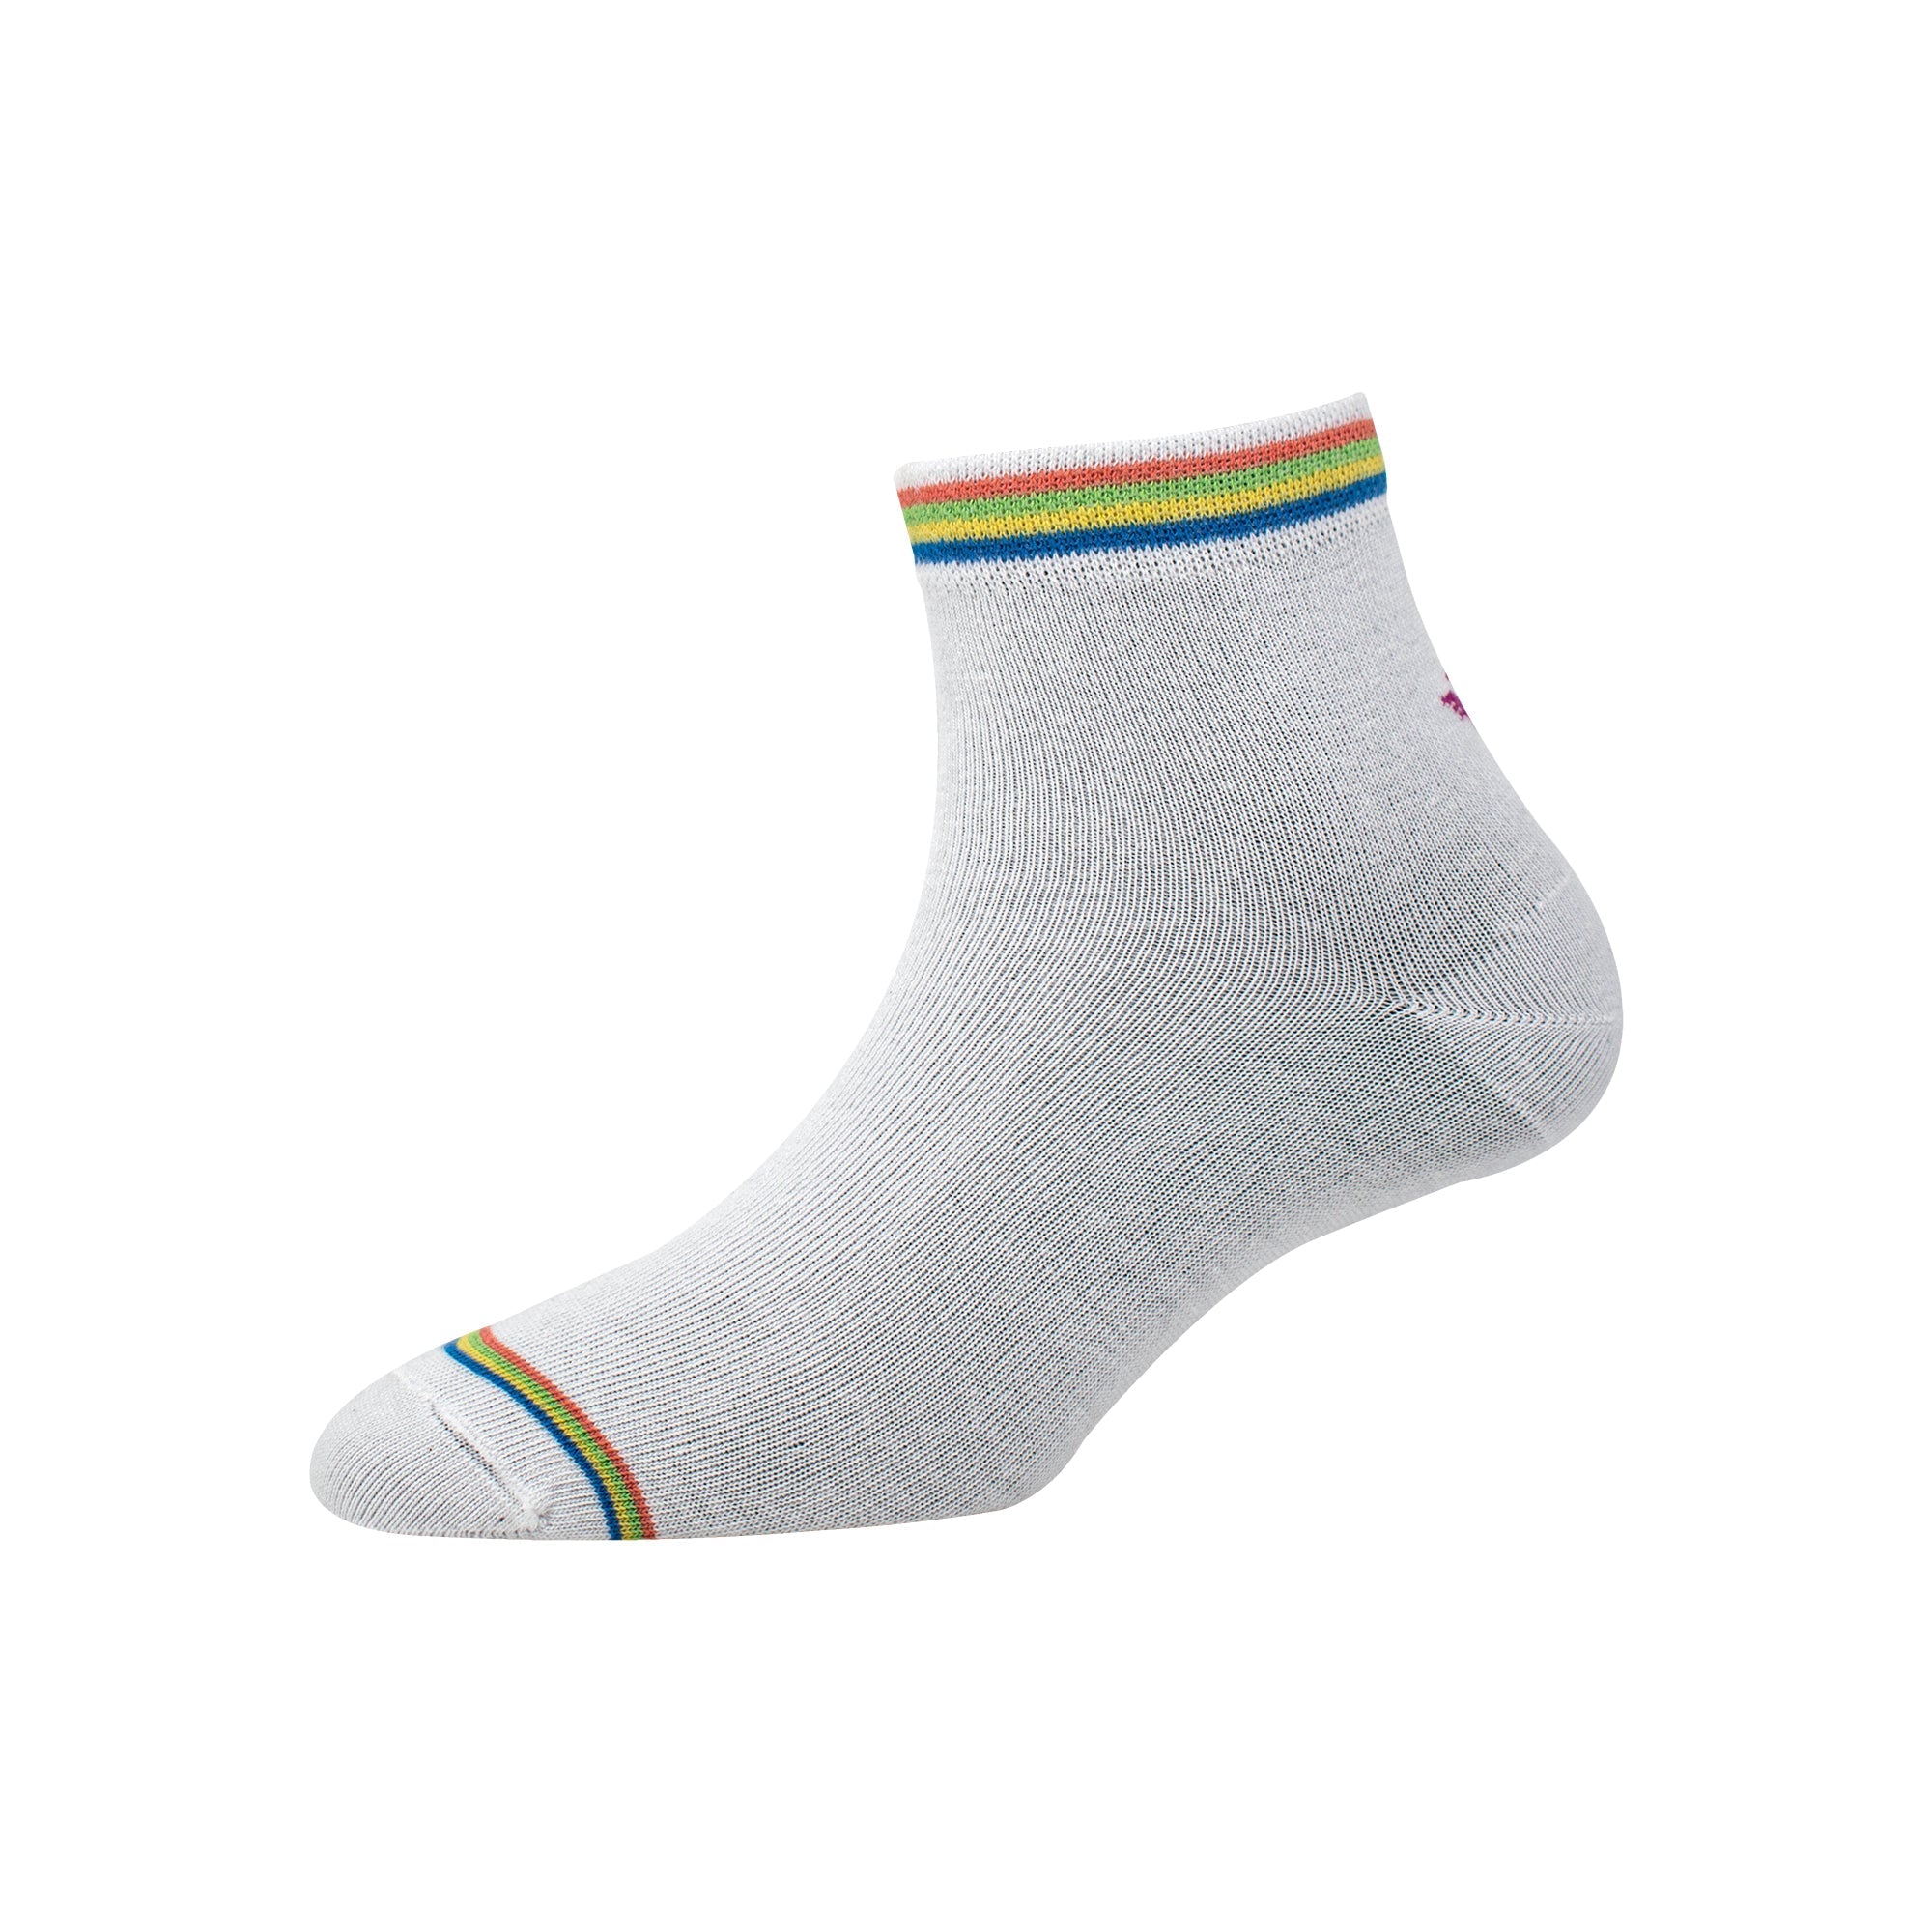 Women's YW-W1-4009 Ankle Welt Stripe Socks